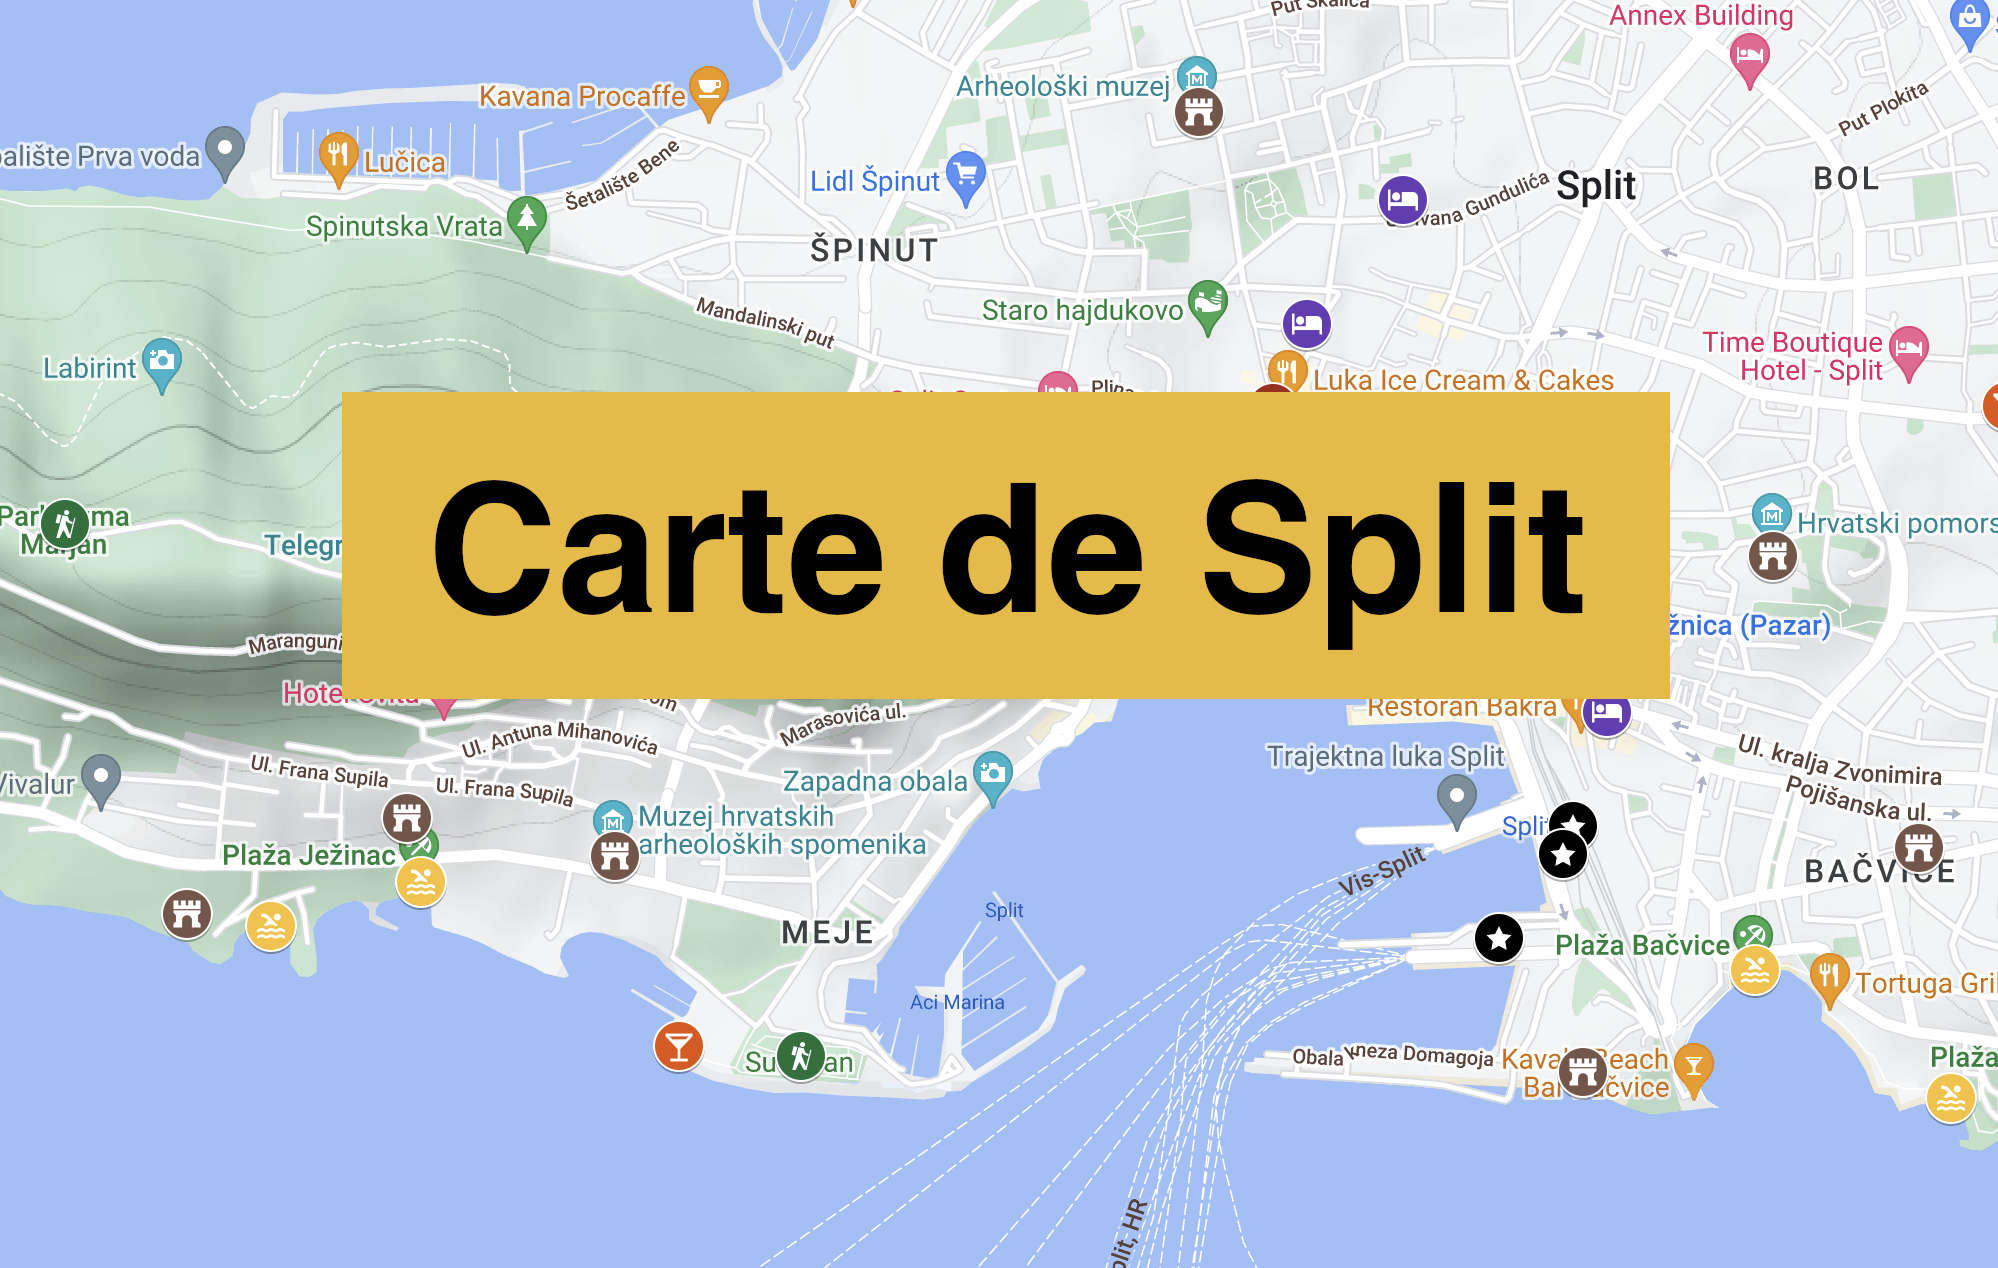 You are currently viewing Carte de Split avec tous les lieux du guide